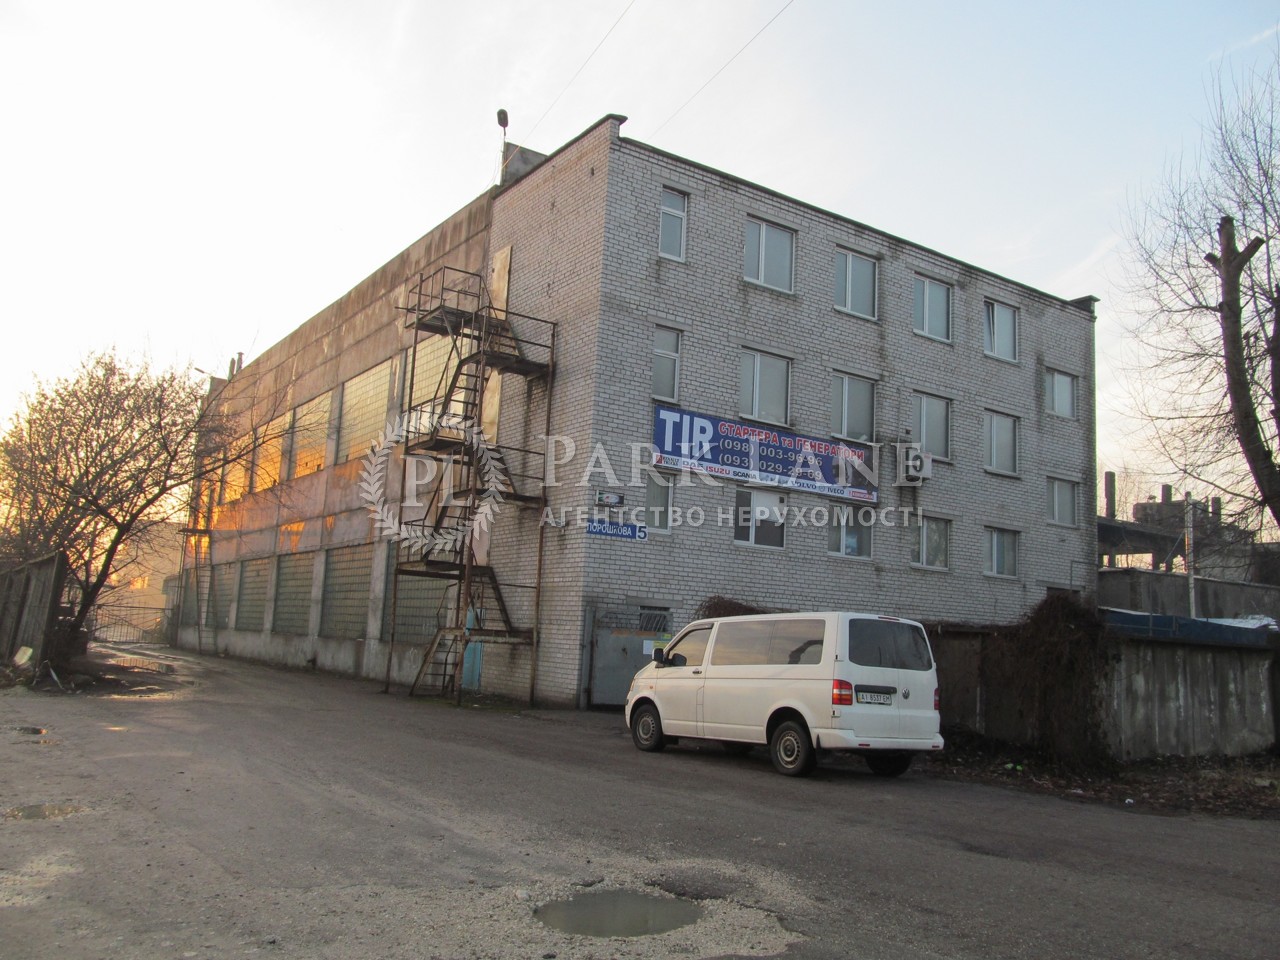  Производственное помещение, ул. Порошковая, Бровары, Z-591723 - Фото 1